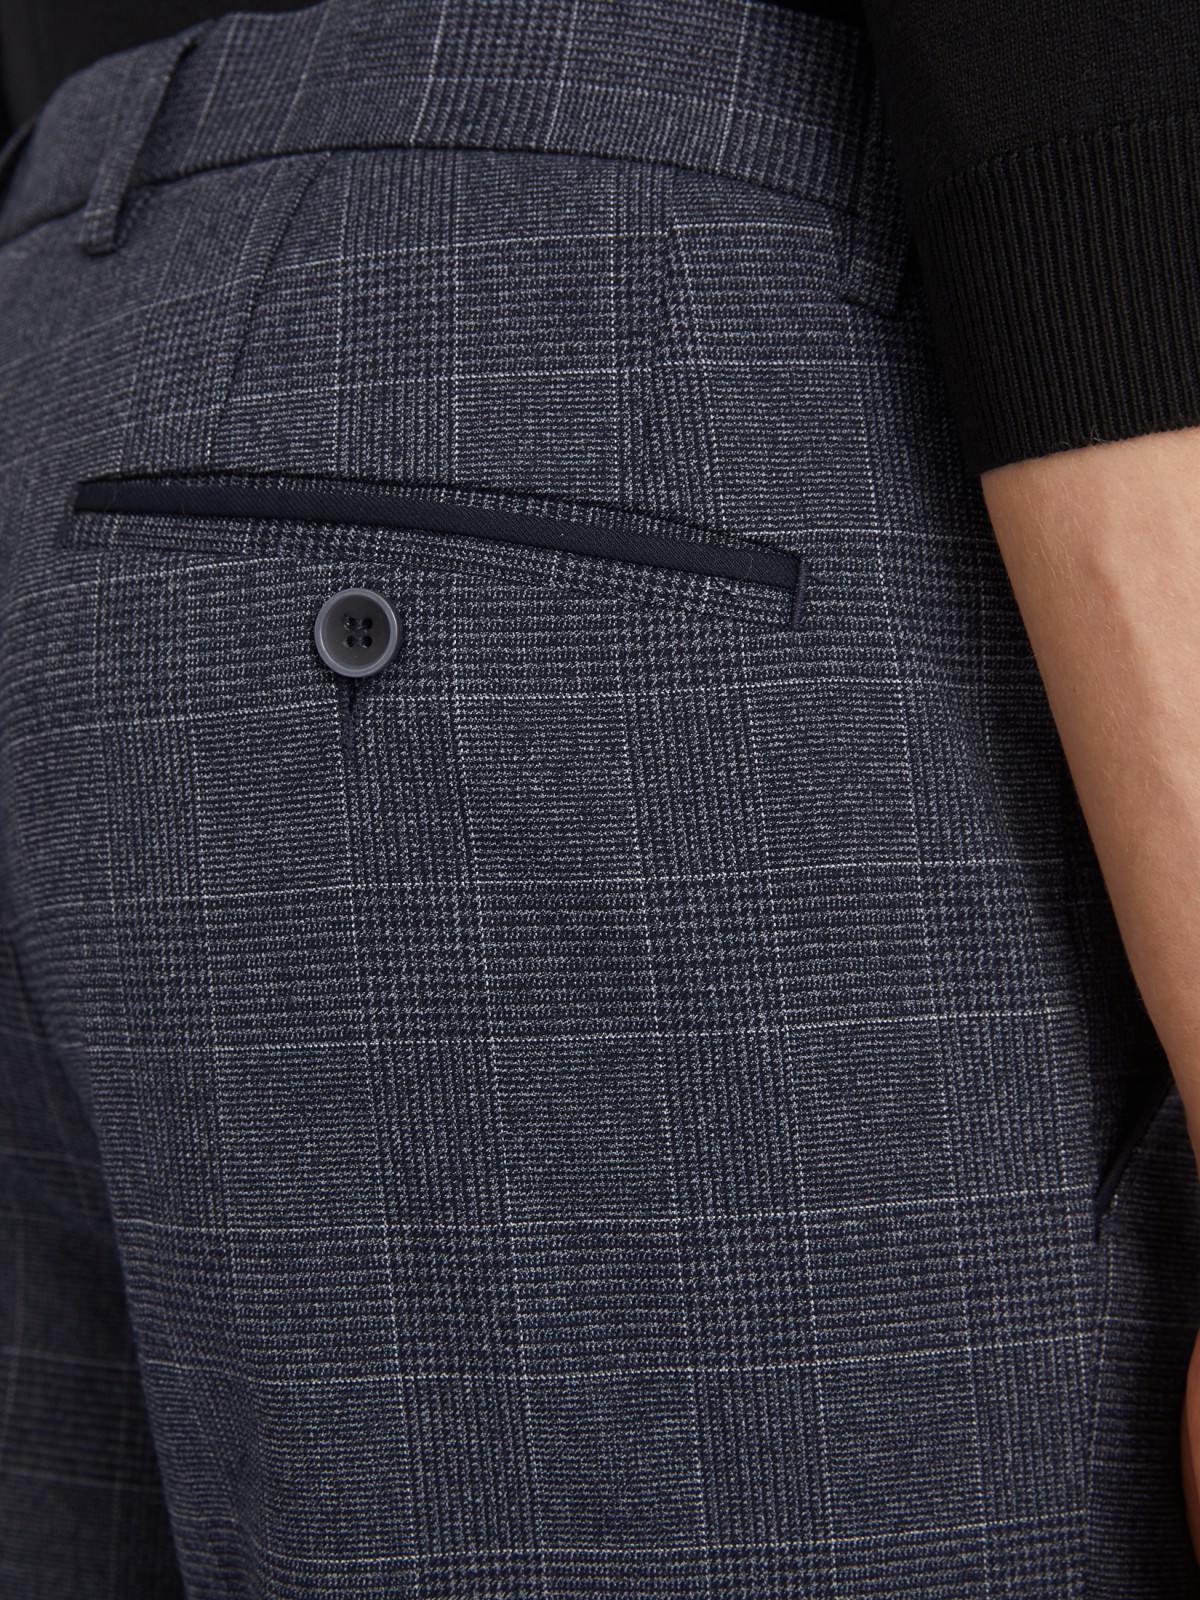 Офисные брюки силуэта Slim со стрелками и узором в клетку zolla 012337366043, цвет синий, размер 34 - фото 6